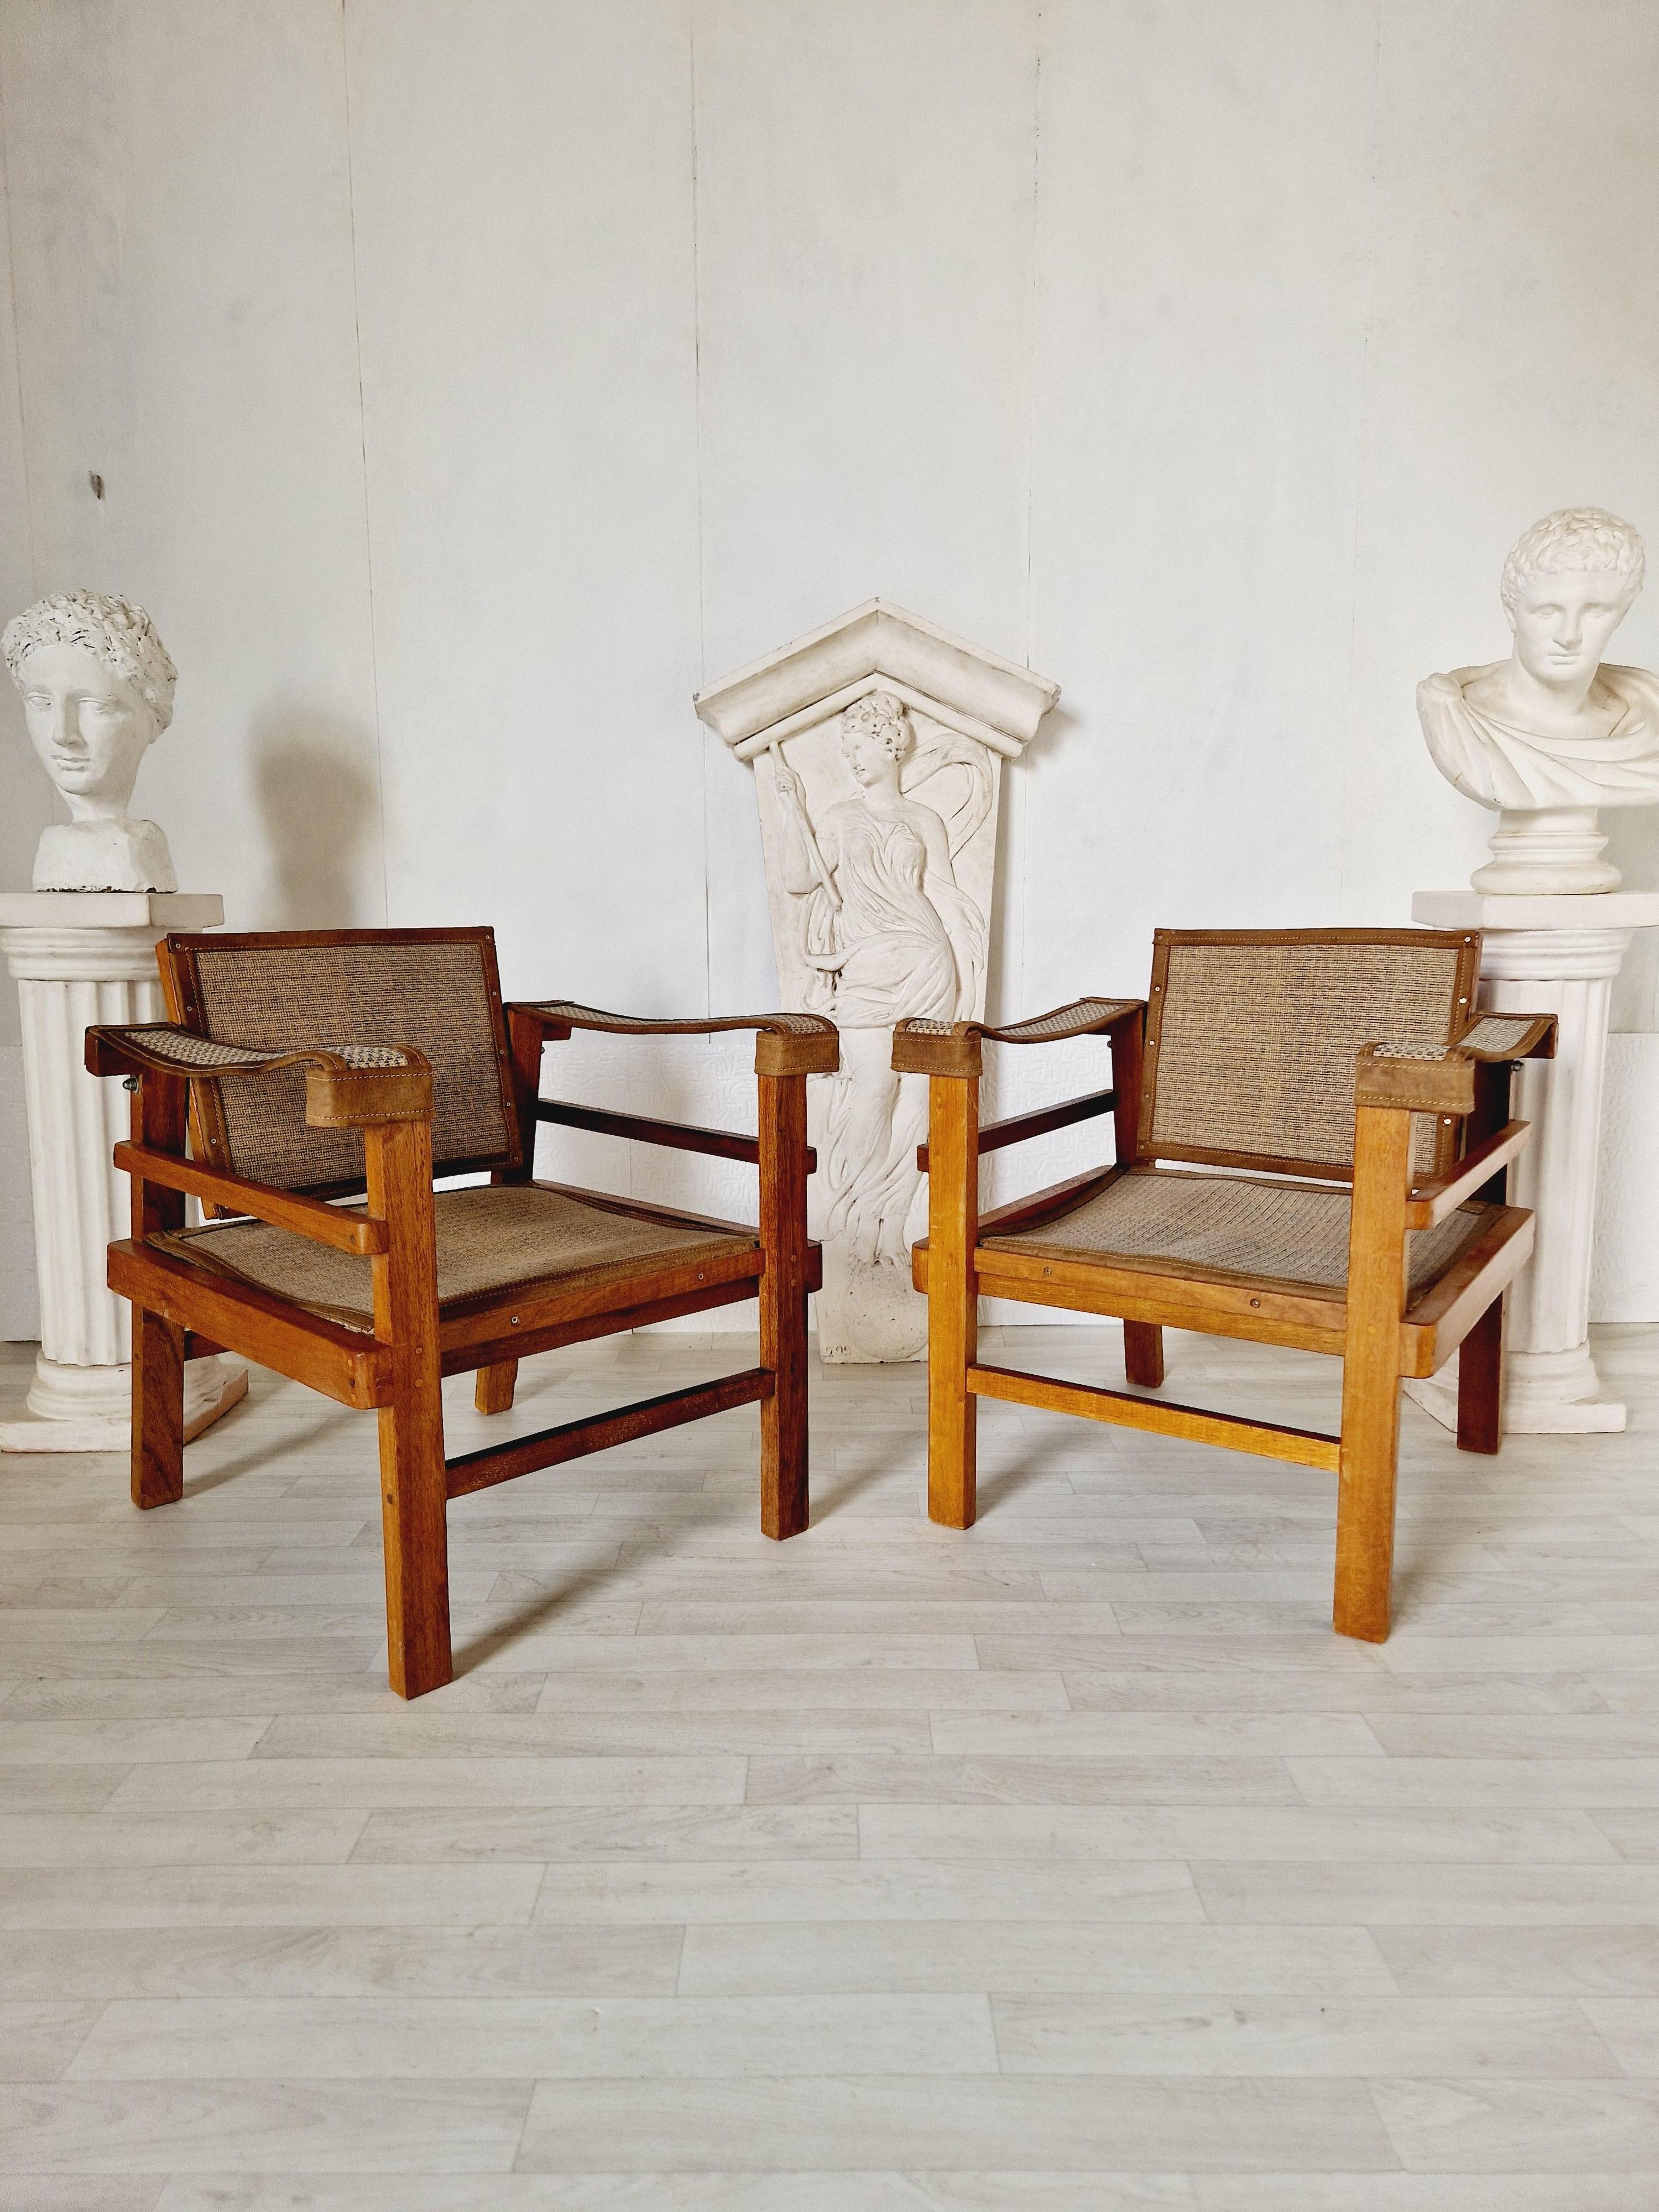 Cette paire de fauteuils vintage est une belle addition à n'importe quelle pièce. Grâce à leur forme carrée et à leurs caractéristiques réglables, ils offrent une expérience d'assise confortable. Les chaises Vintage By sont fabriquées en cuir et en